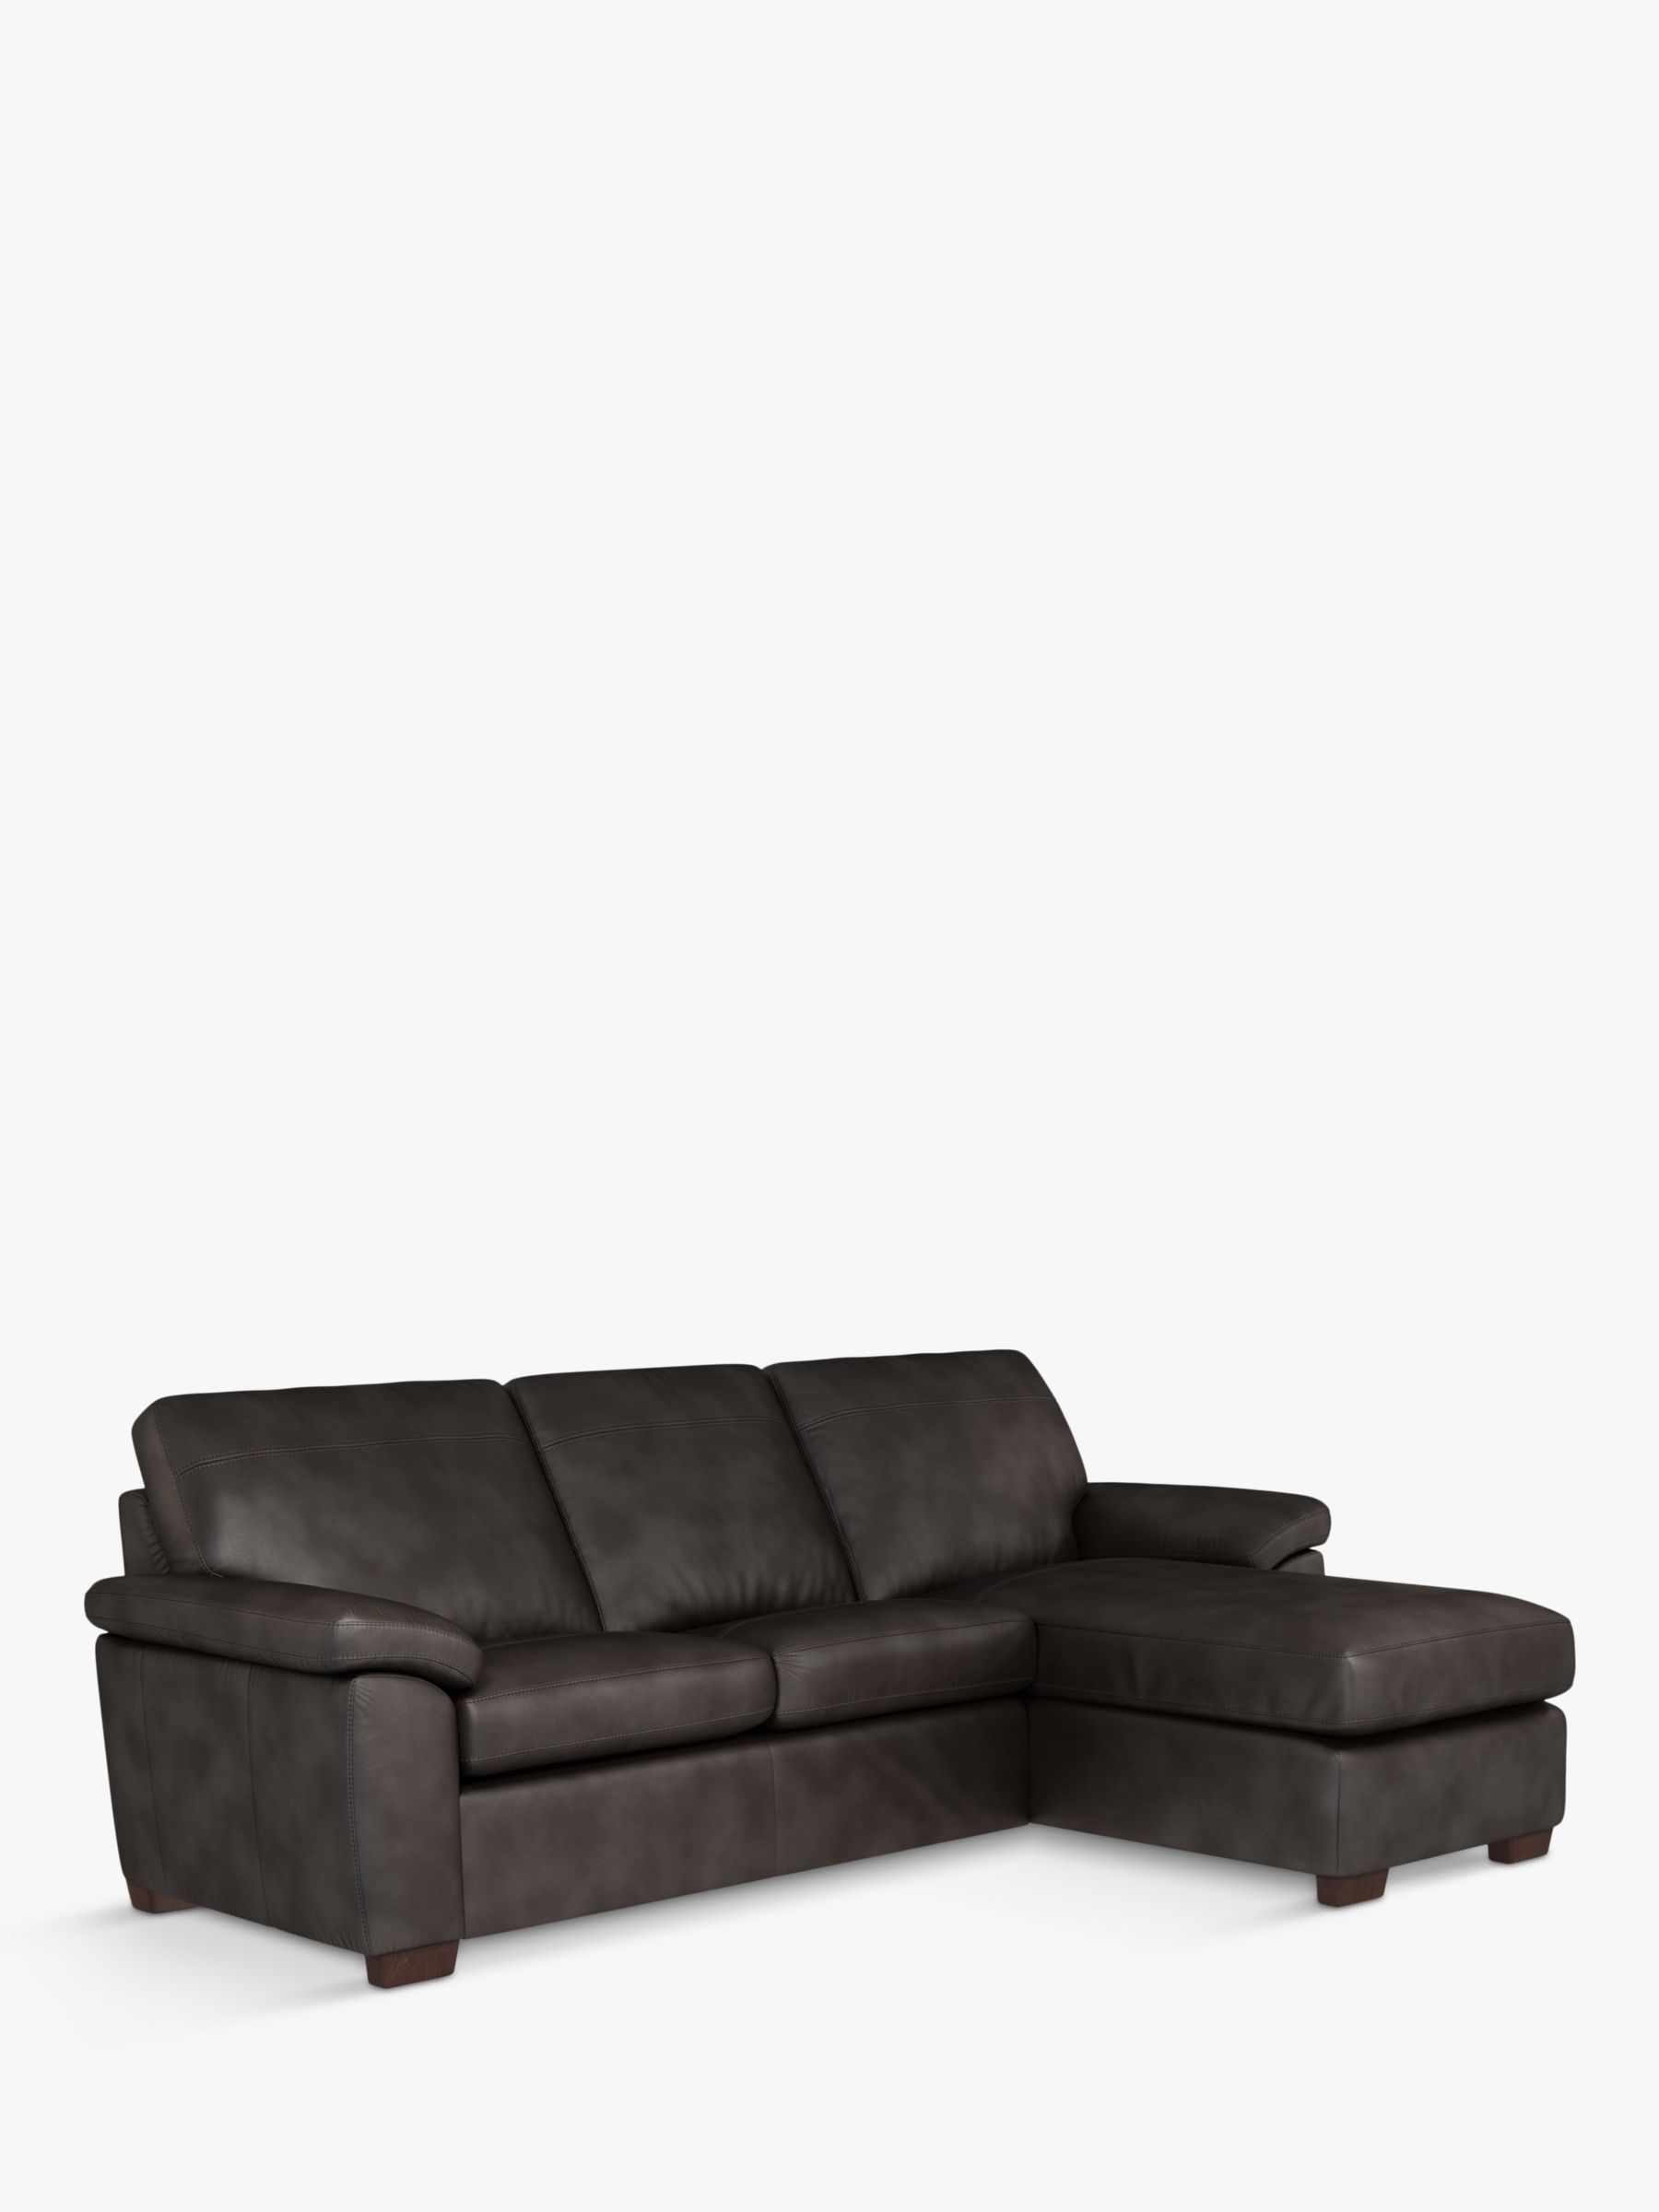 Camden Range, John Lewis Camden RHF Storage Chaise End Leather Sofa Bed, Dark Leg, Contempo Dark Chocolate